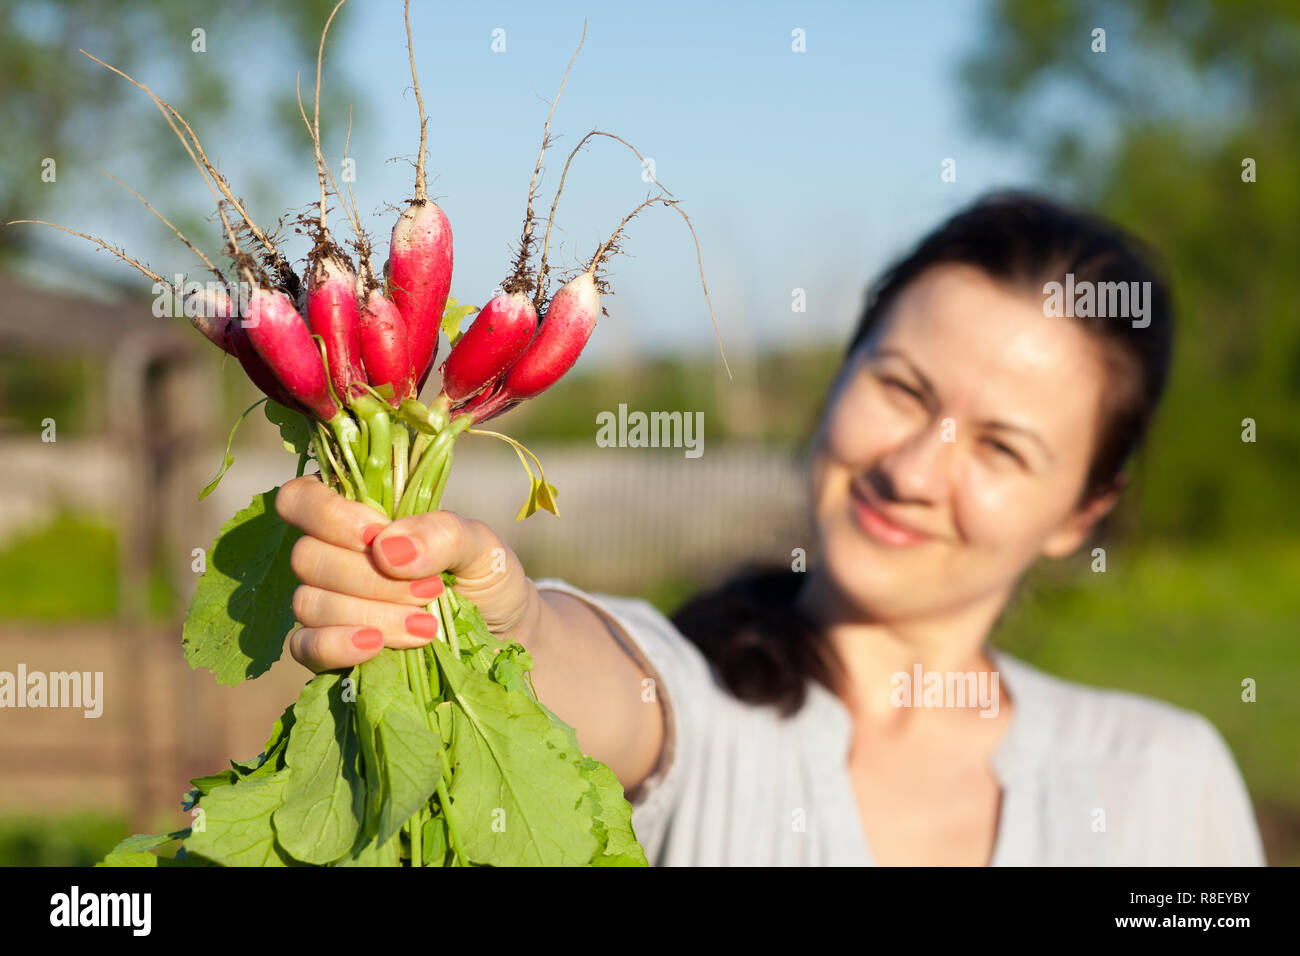 Frau zeigt ein rettich Garbe, die wächst an ihrer Datscha Stockfoto